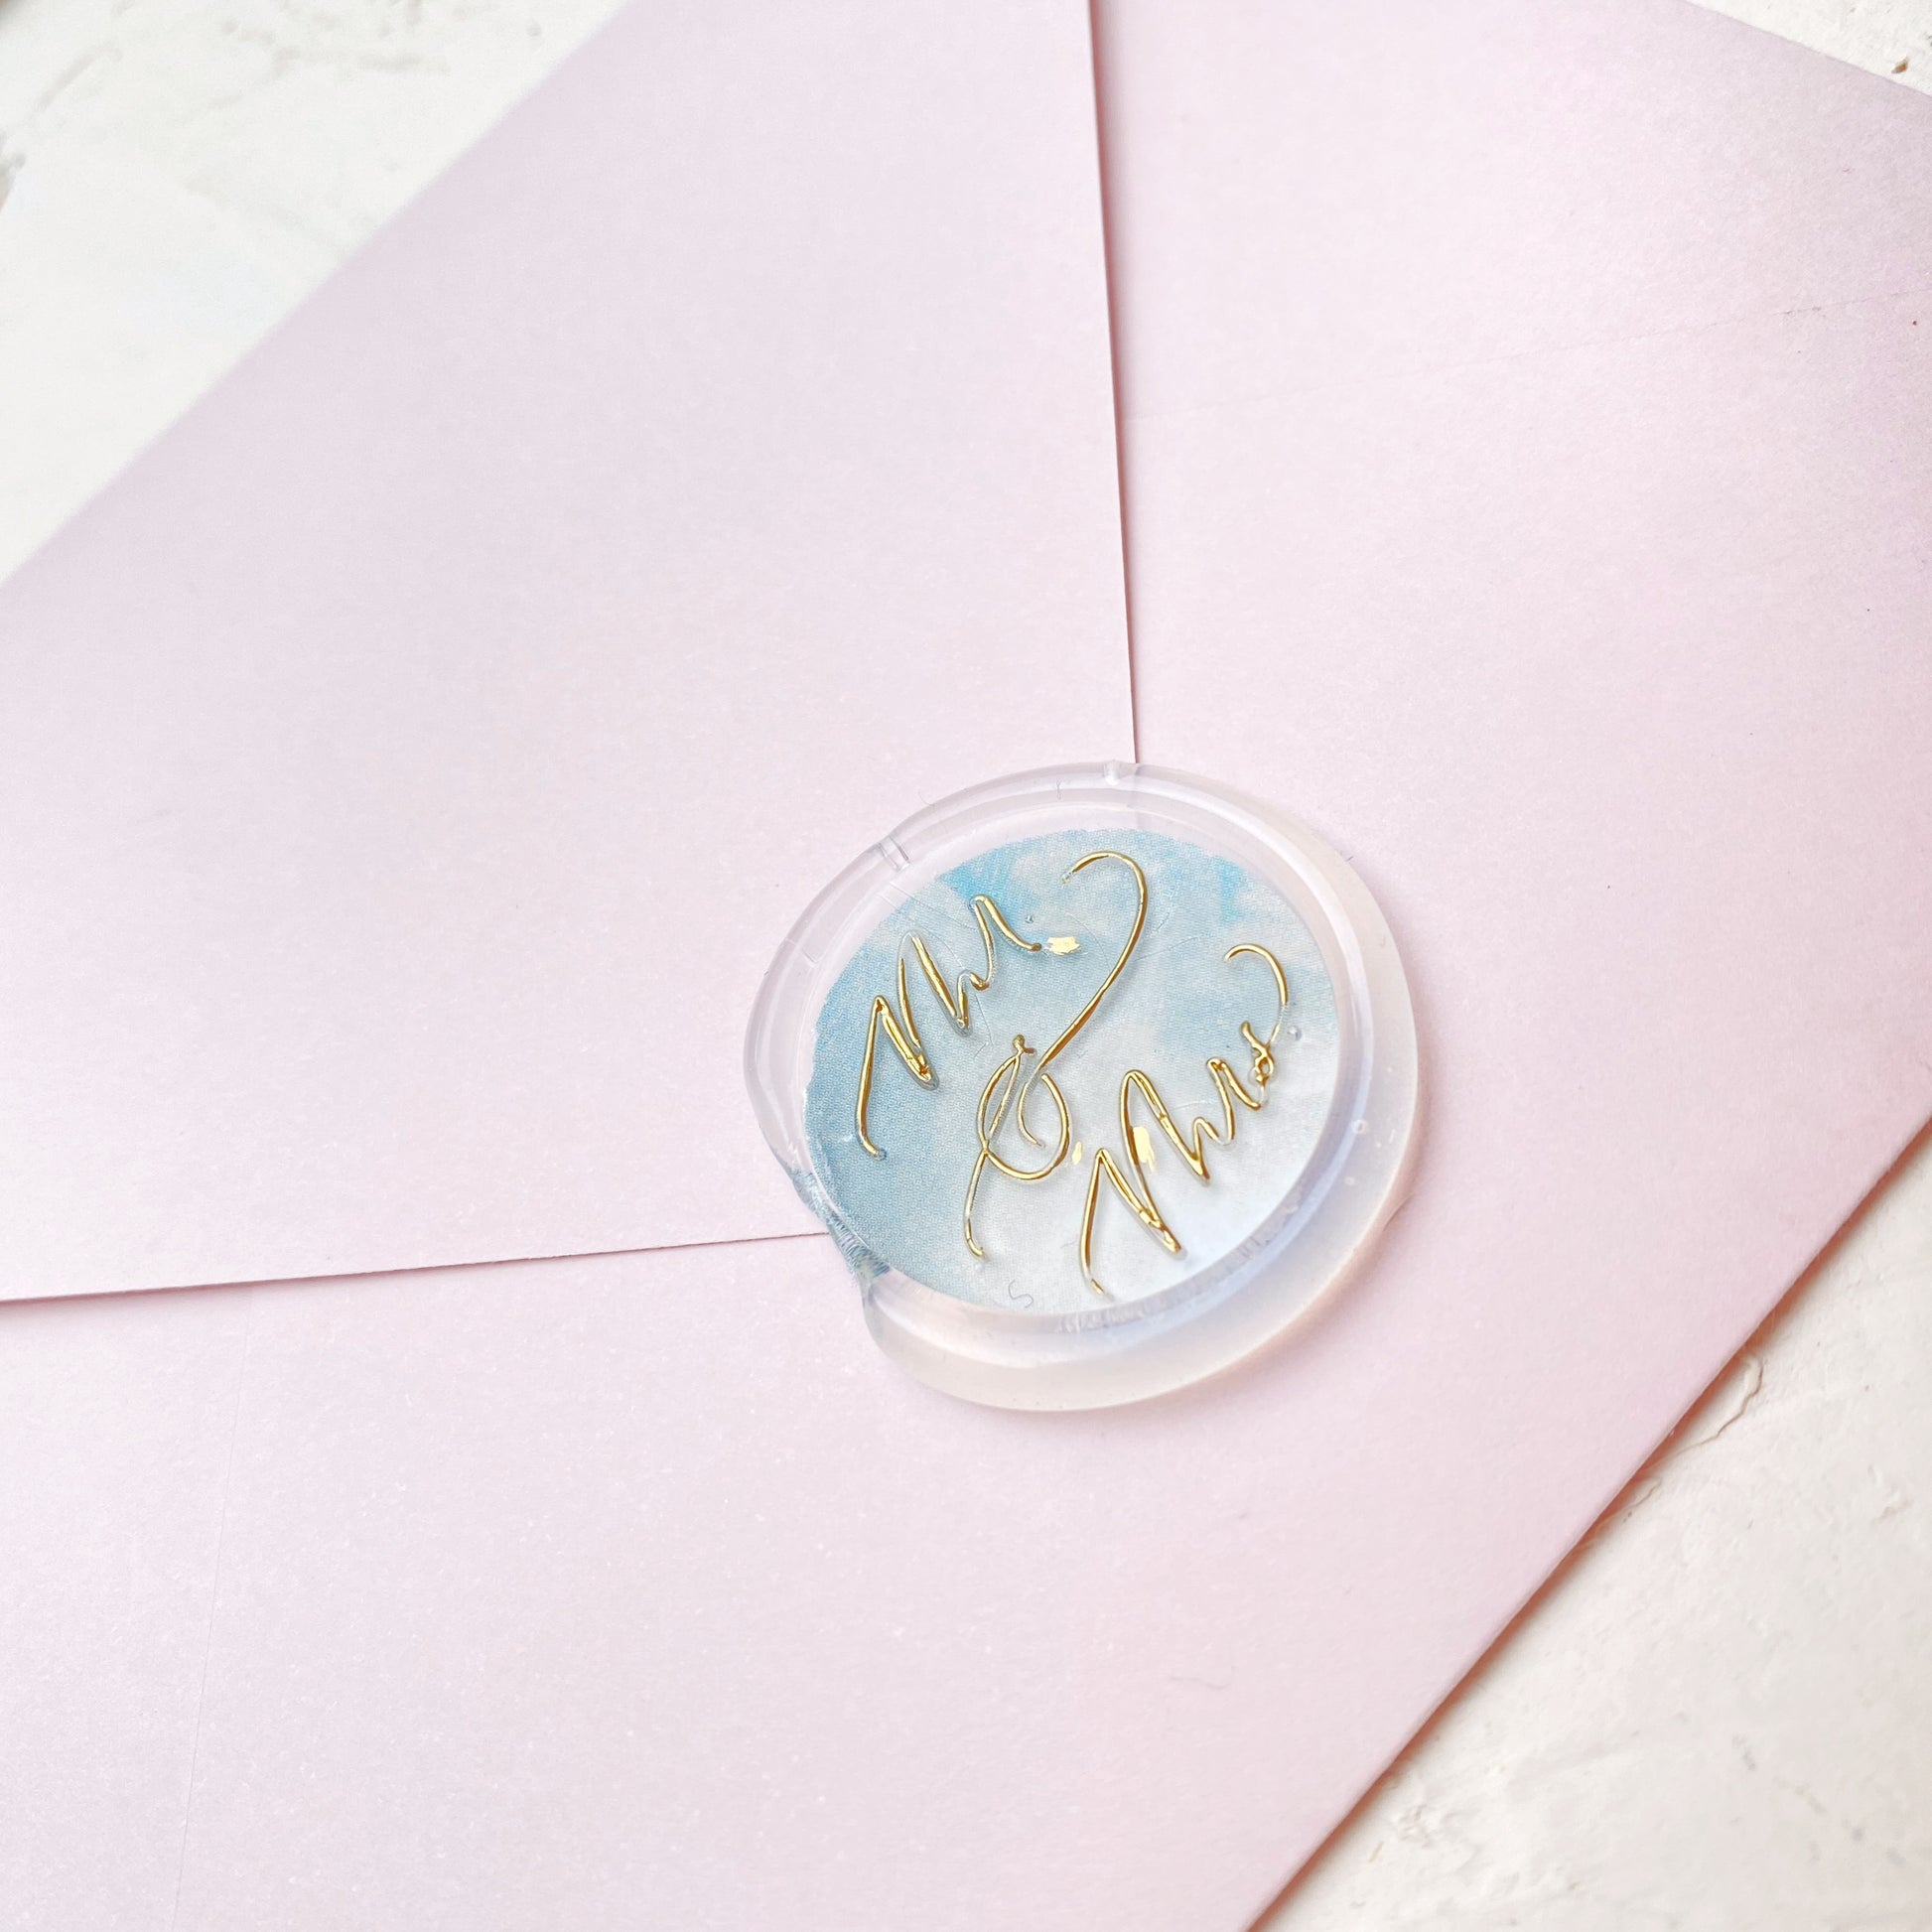 Hotová pečeť na svatební oznámení Mr. & Mrs. detail z profilu na růžové obálce se zlatým písmem